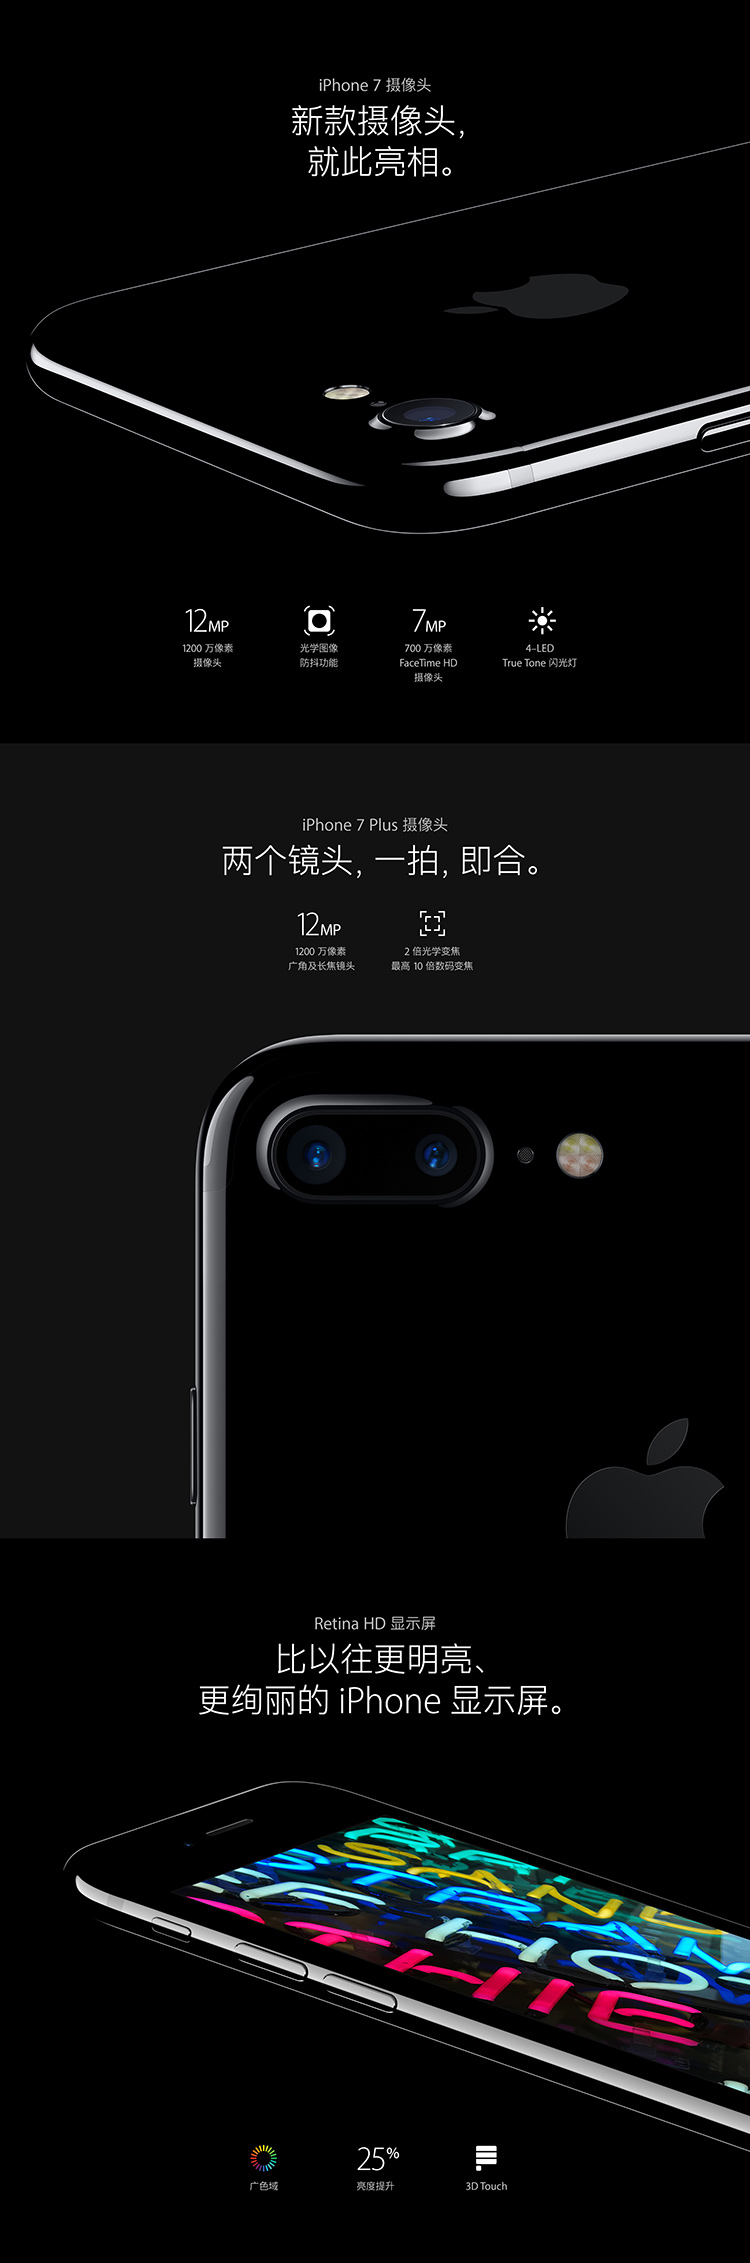 Apple iPhone 7 Plus 128GB 亮黑色 移动联通电信4G手机